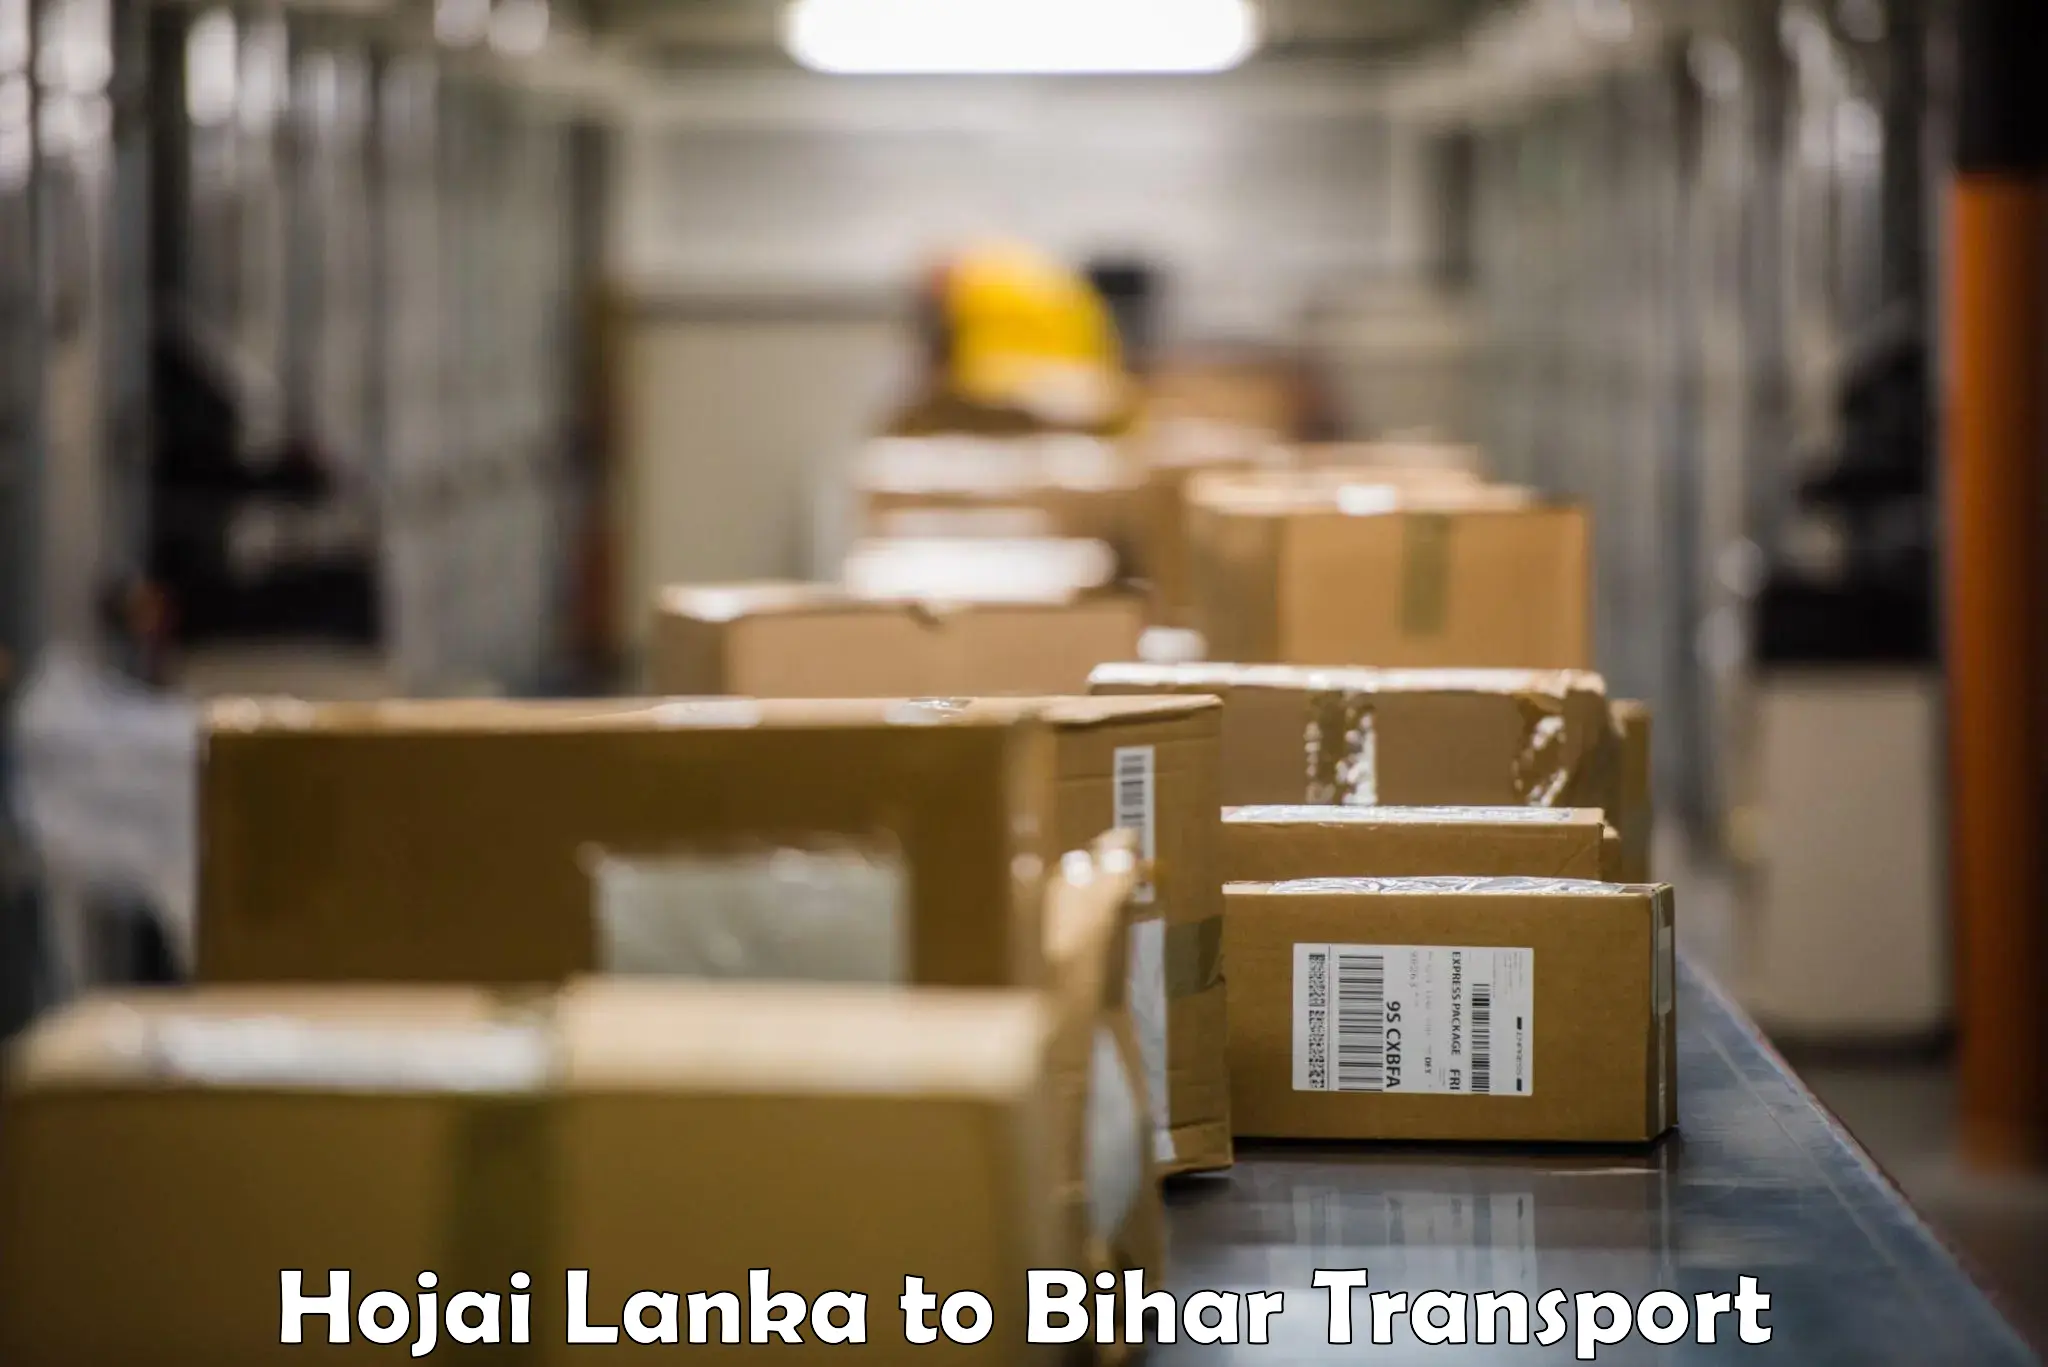 Road transport online services Hojai Lanka to Daudnagar